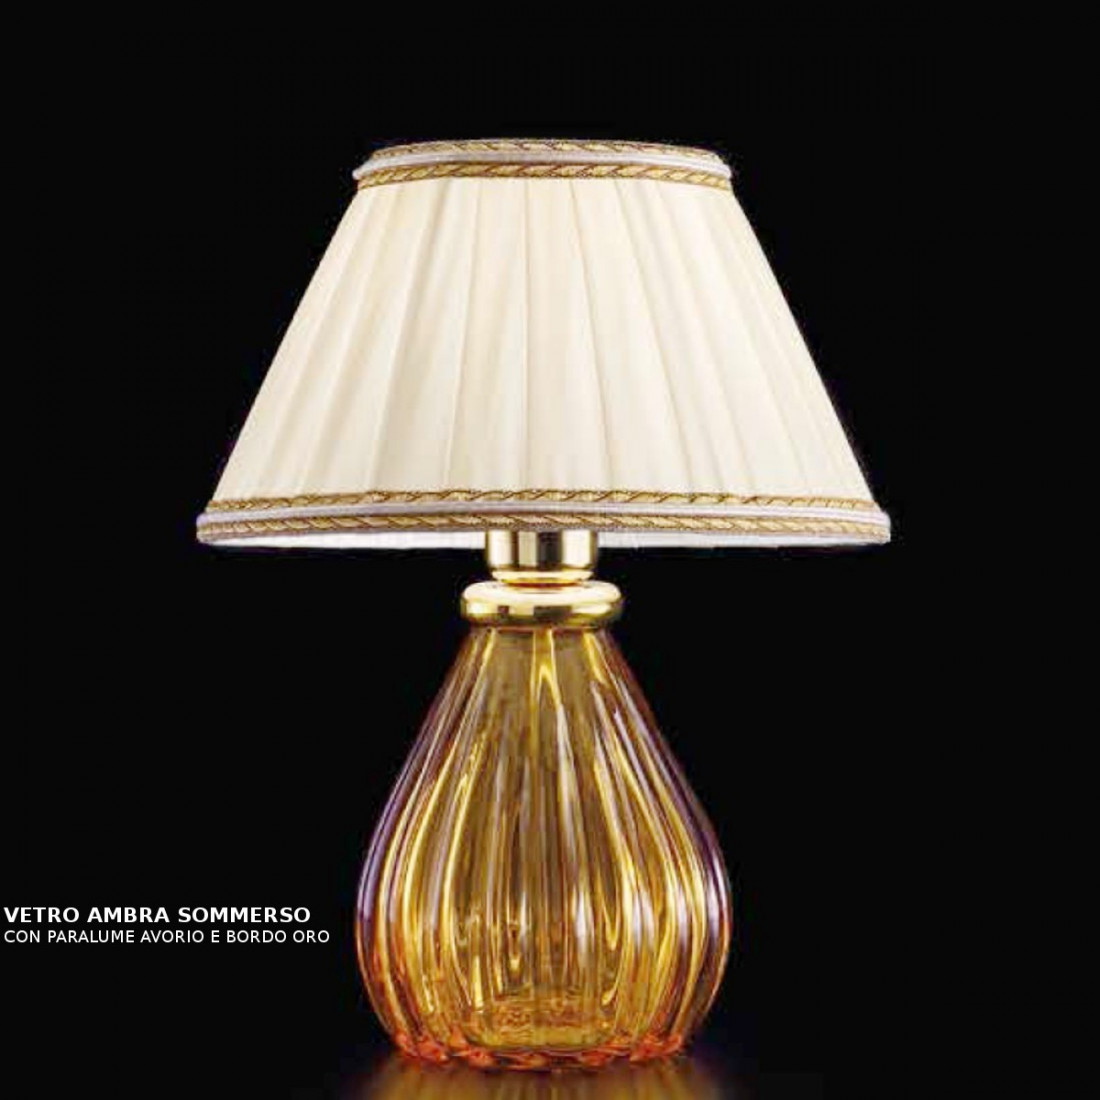 Abat-jour SY-SCRIGNO 1395 TOP completo vetro murano veneziano colorato paralume tessuto lampada tavolo classica